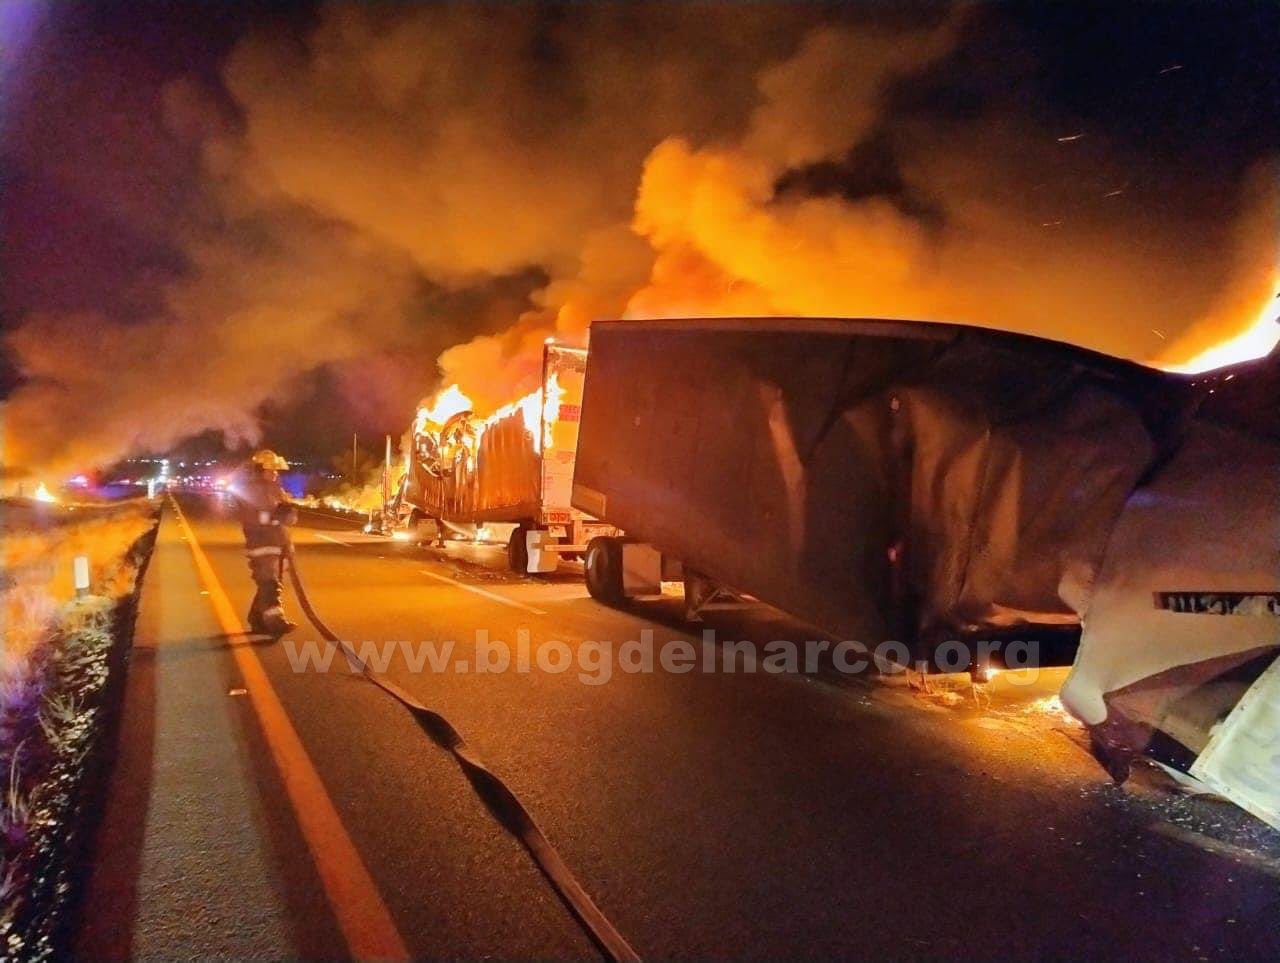 El Cártel de Sinaloa, facción Mayo Zambada, atacó a civiles inocentes quemando sus vehículos y camiones en Zacatecas tras la detención de 6 sicarios